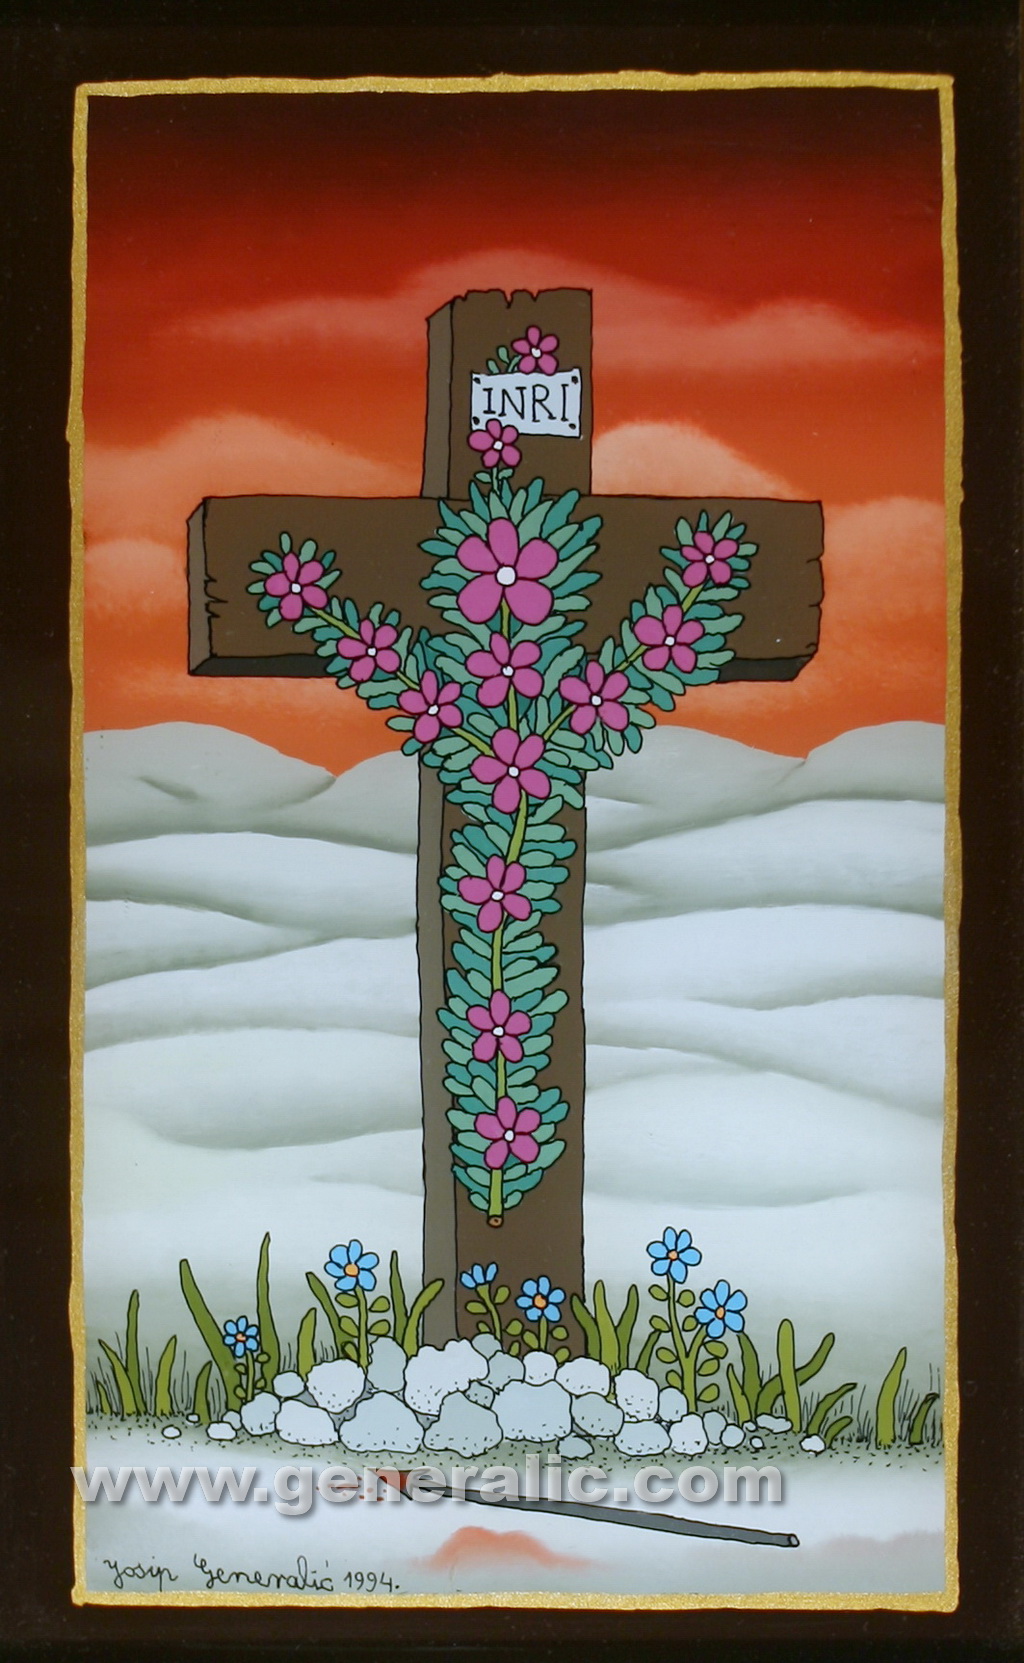 Josip Generalic, 1994, Flower cross, oil on glass, 26x17 cm